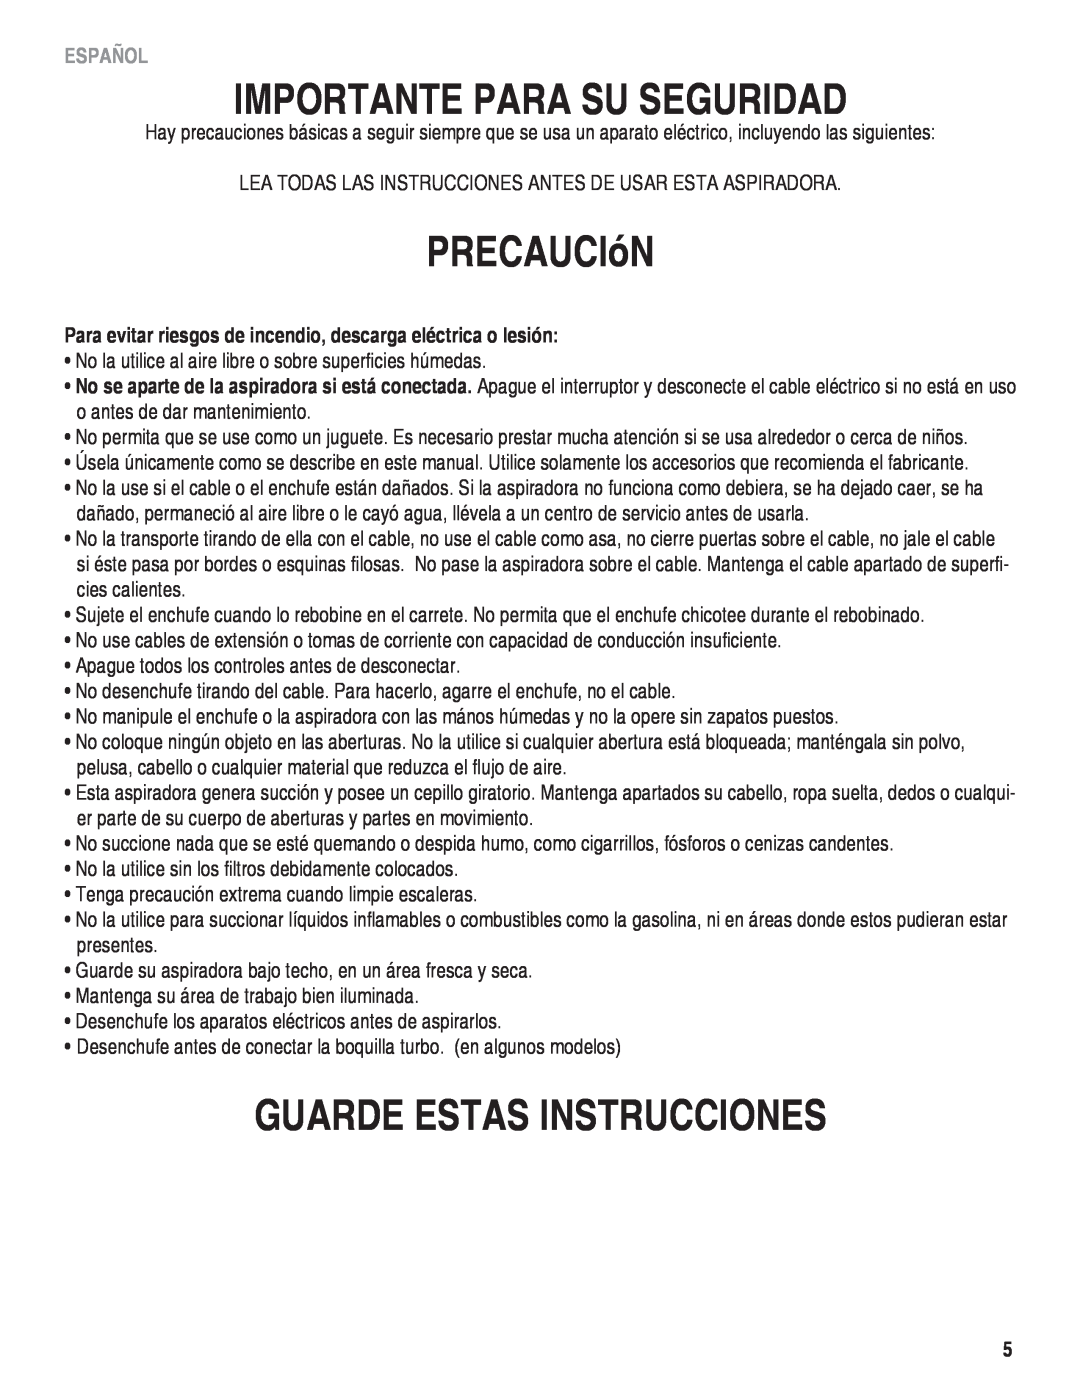 Eureka! Tents 940 manual Importante Para Su Seguridad, PRECAUCIóN, Guarde Estas Instrucciones, Español 